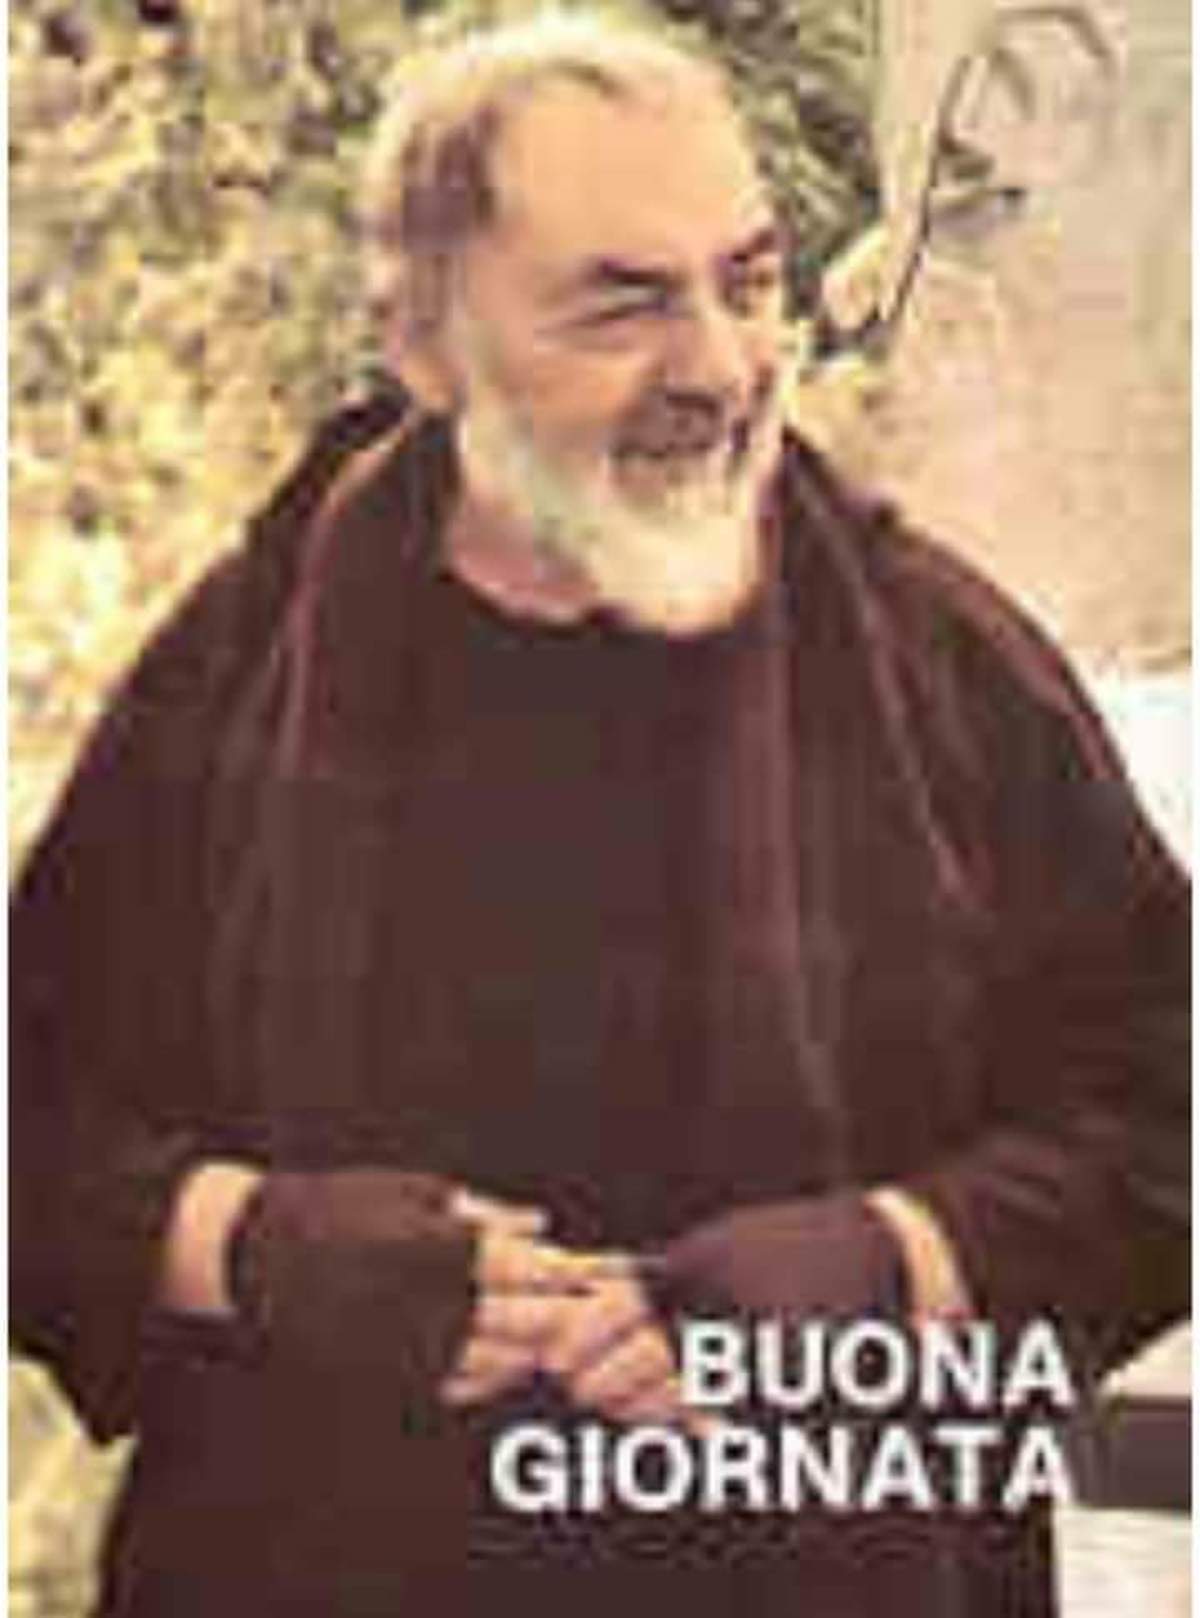 Buona Giornata con San Pio immagini